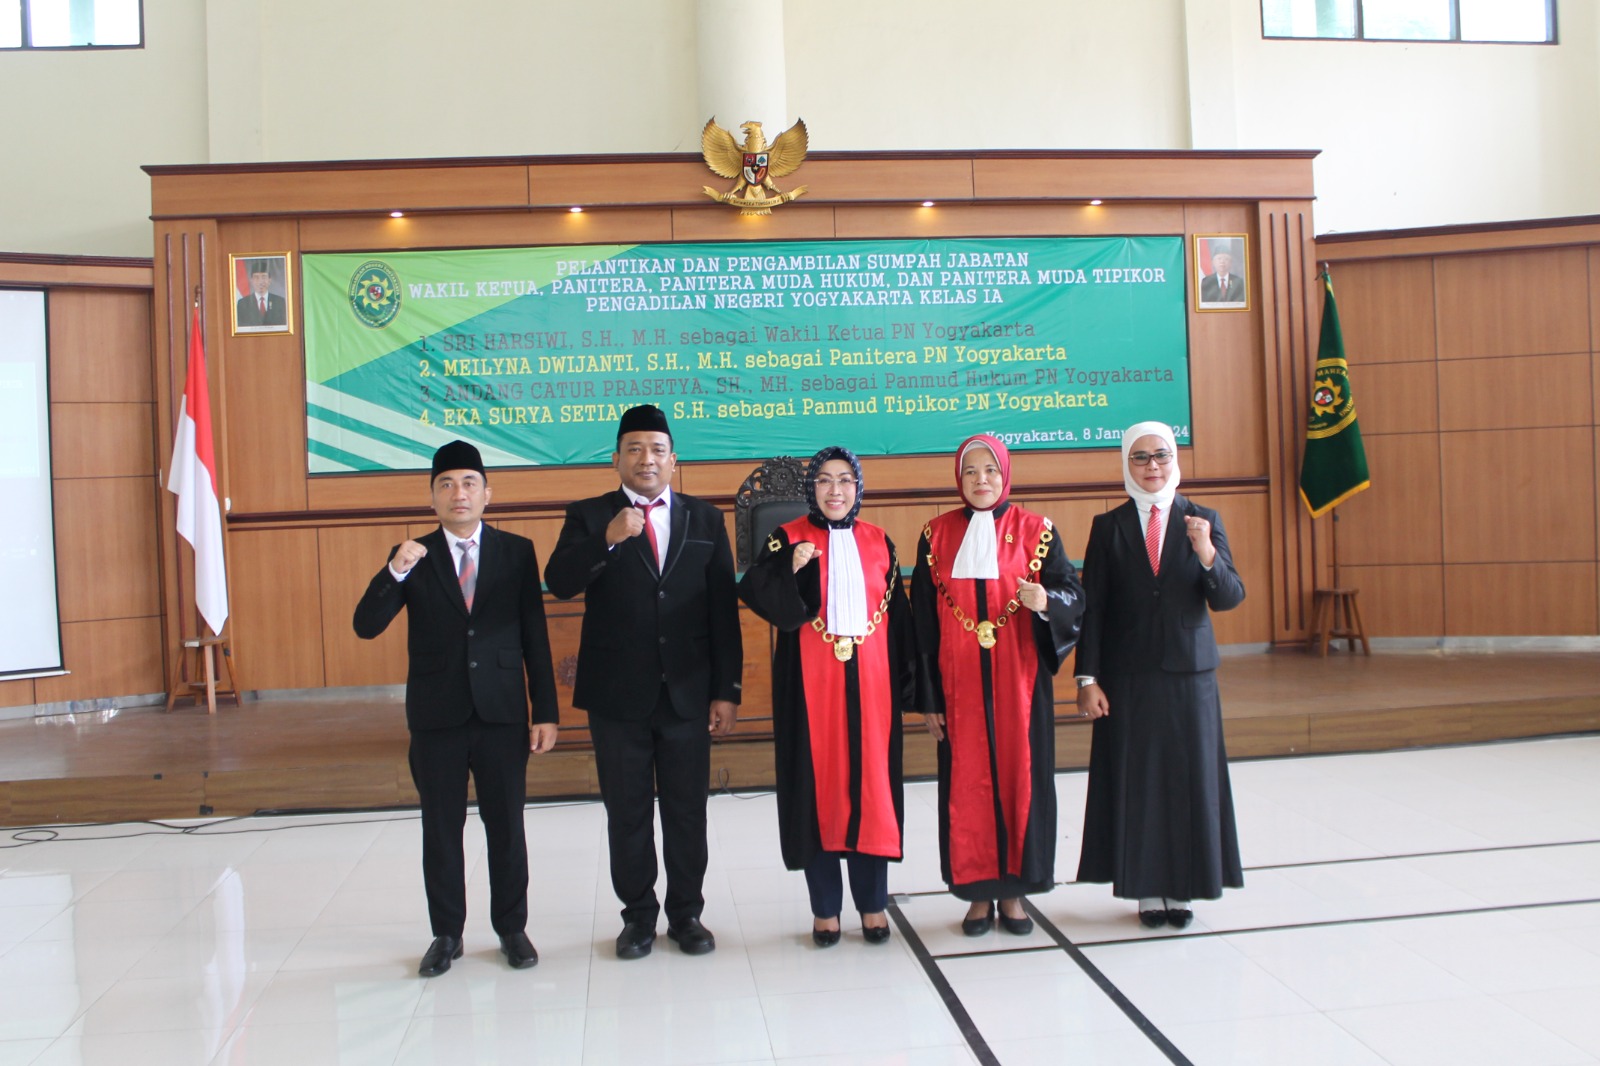 Upacara Pelantikan dan Pengambilan Sumpah Jabatan Wakil Ketua, Panitera dan Panitera Muda Tipikor serta Panitera Muda Hukum Pengadilan Negeri Yogyakarta